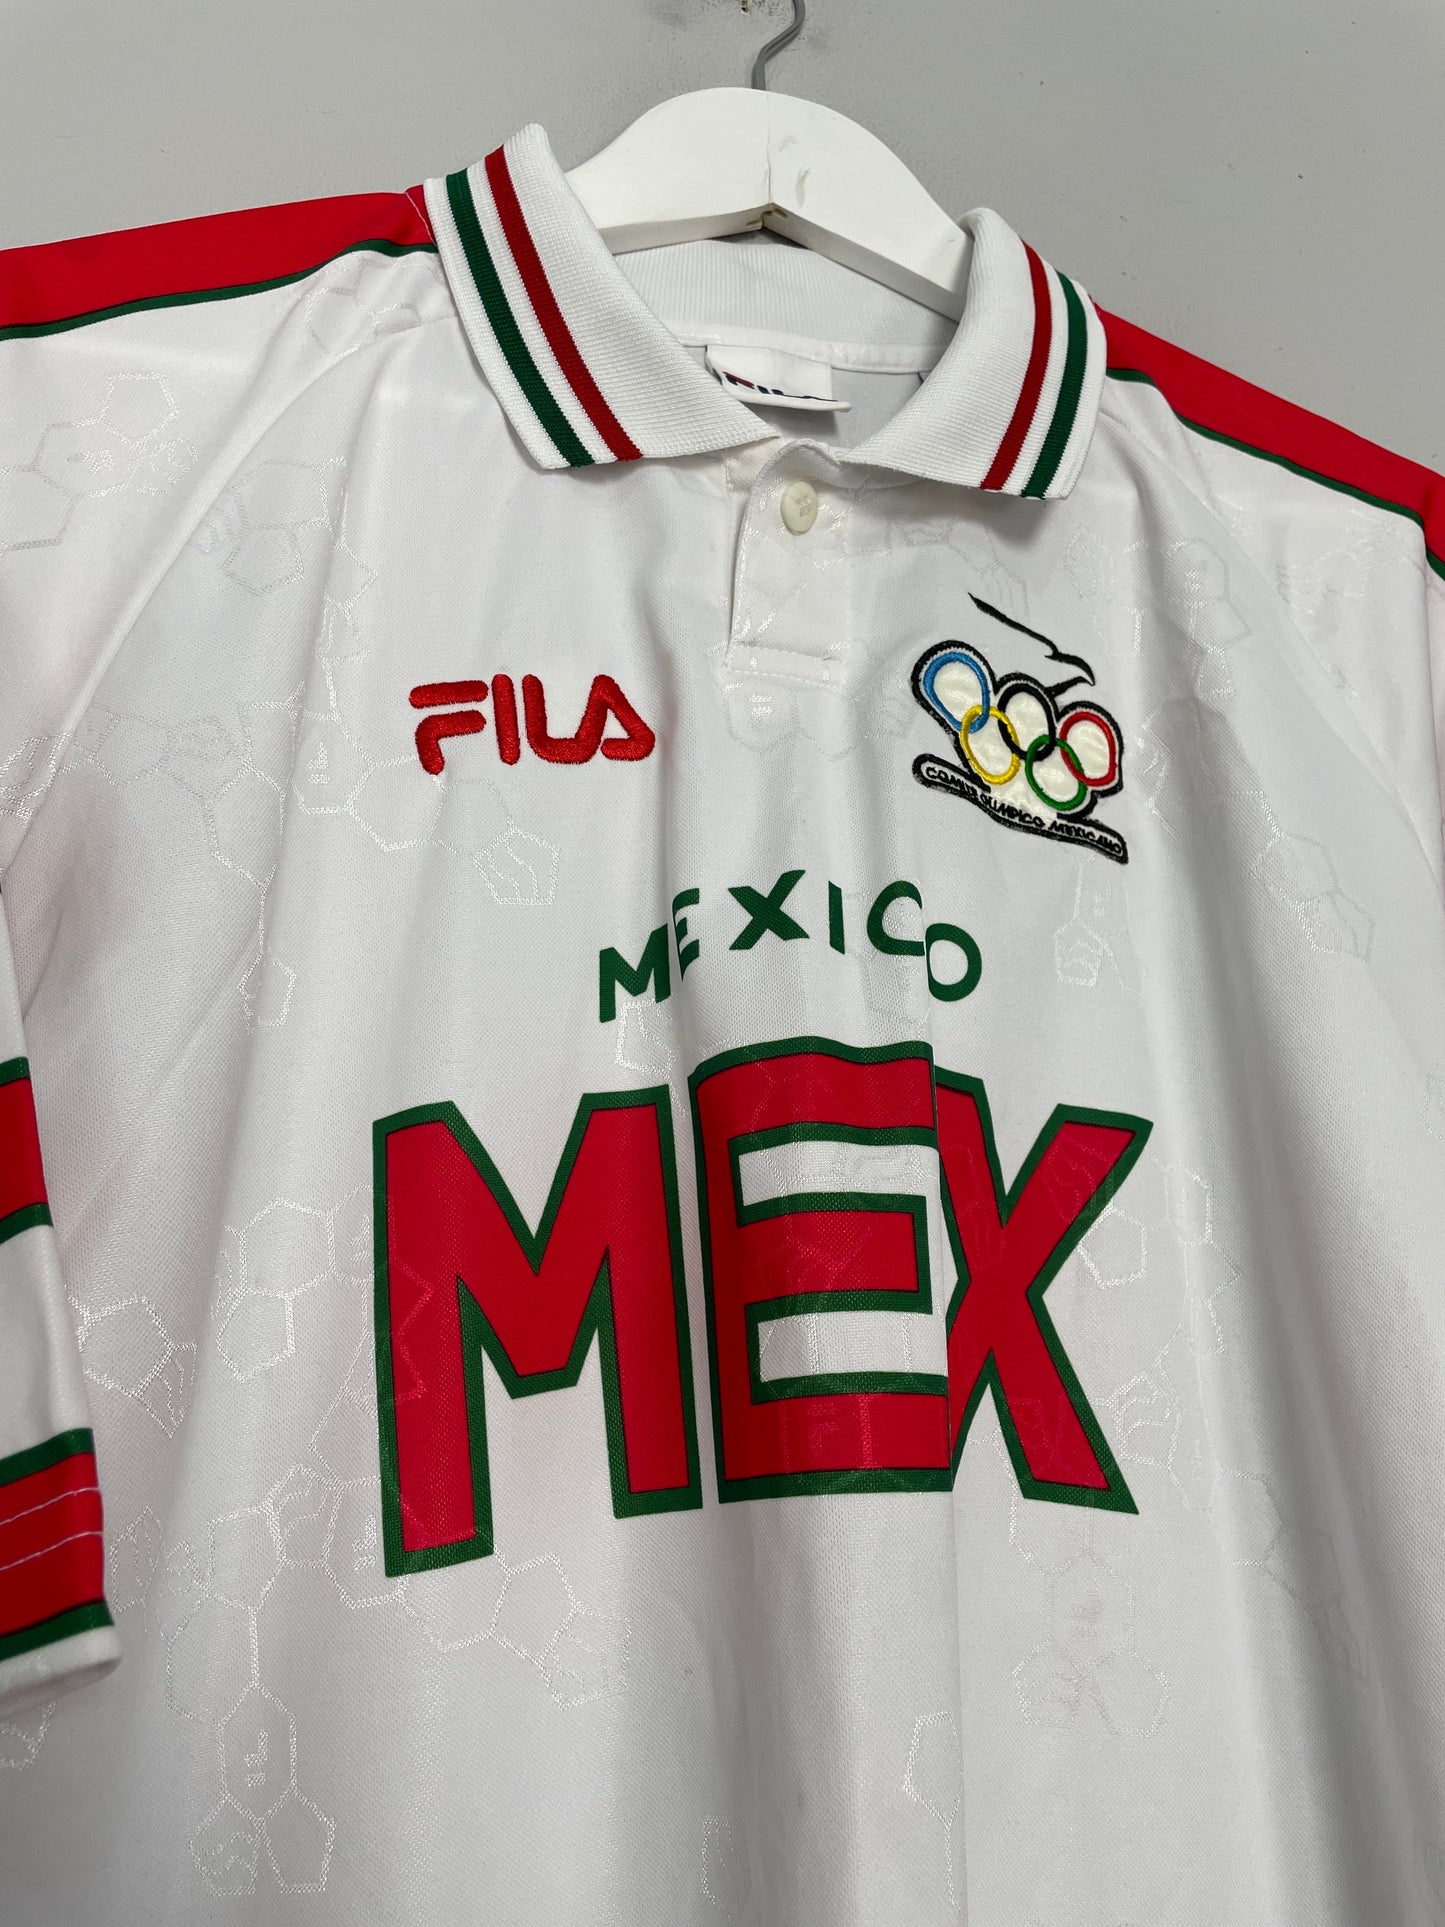 2000 MEXICO OLYMPICS SHIRT (XL) FILA